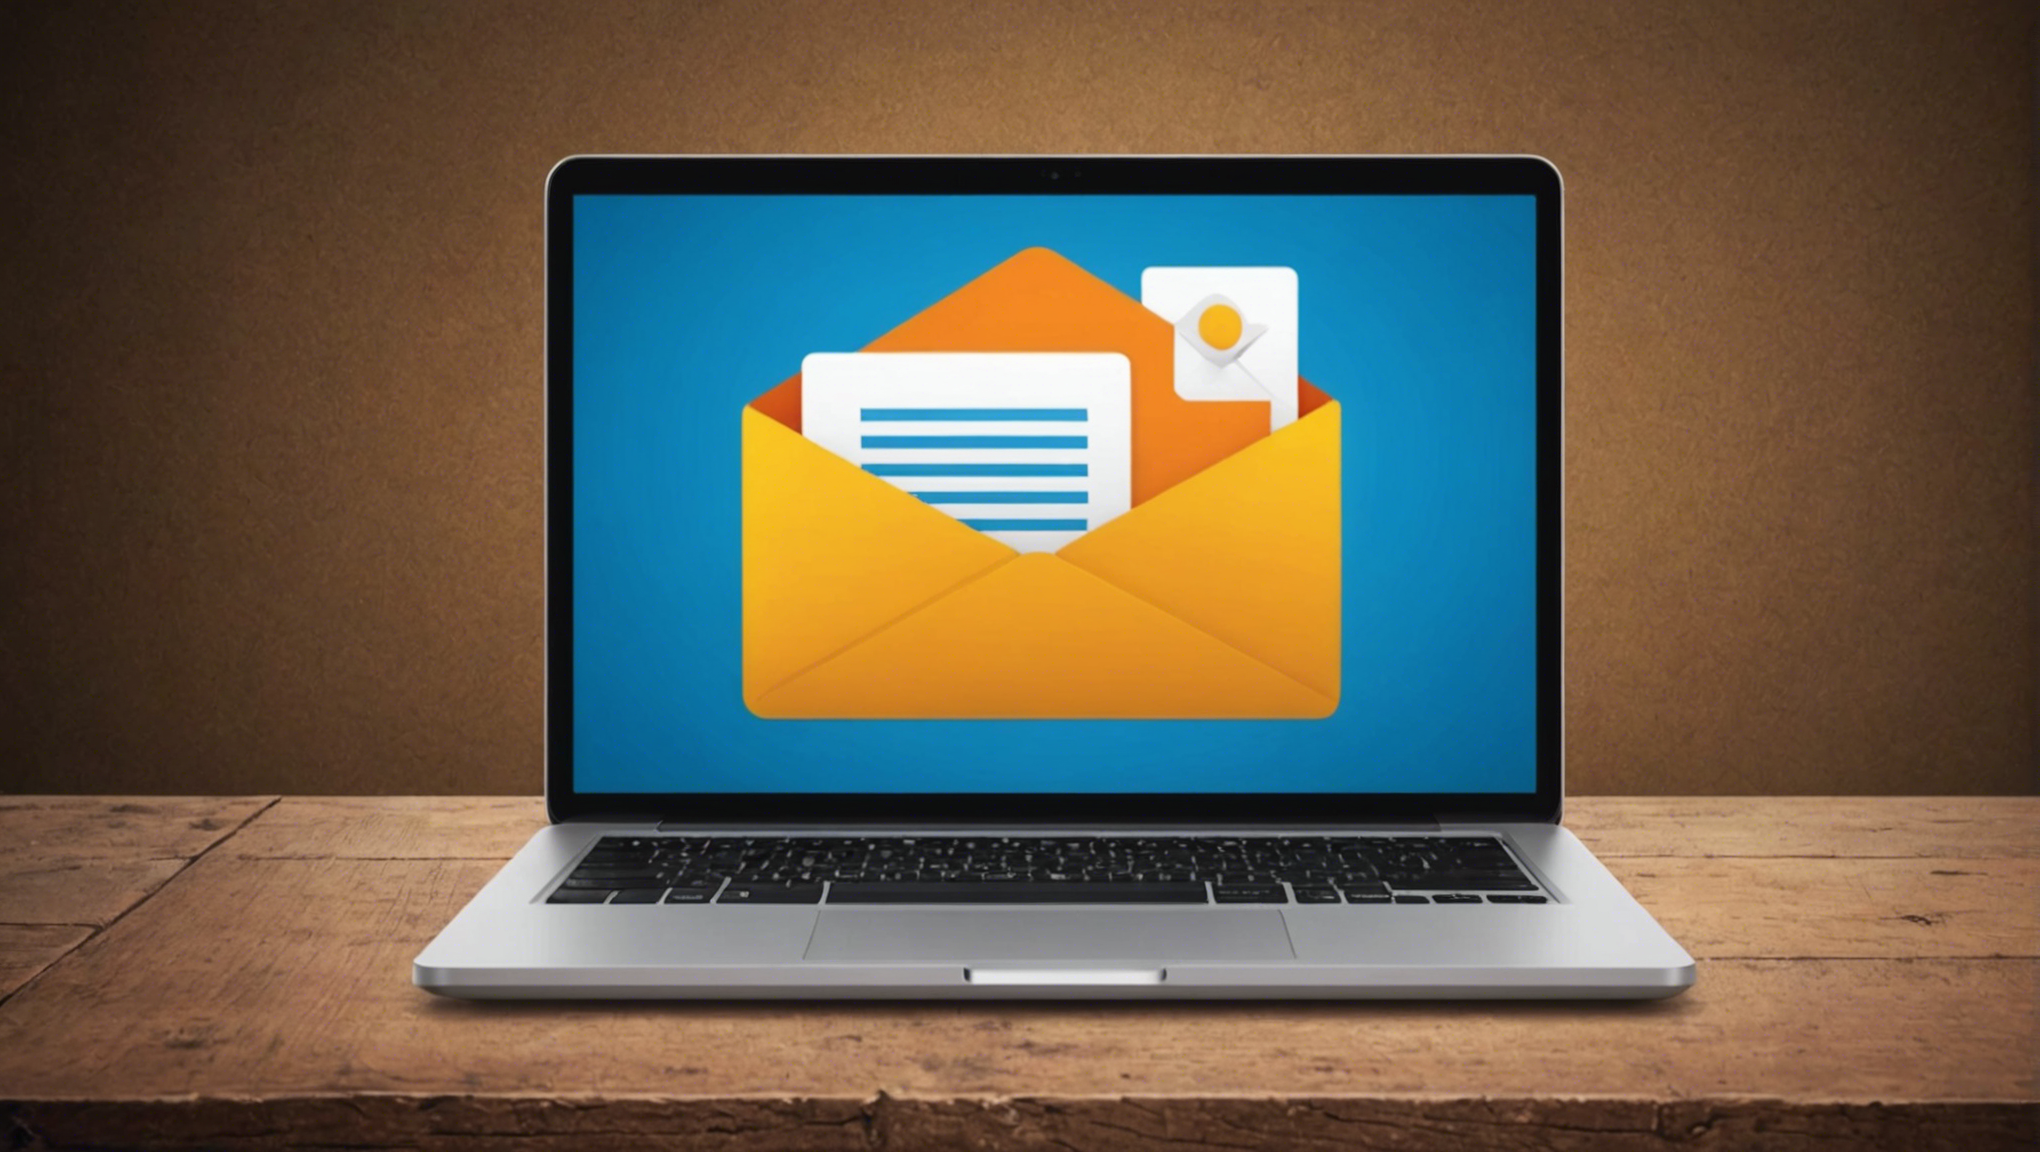 découvrez comment configurer la connexion pop3 et smtp pour accéder gratuitement à votre mail hotmail et profitez pleinement de vos emails.